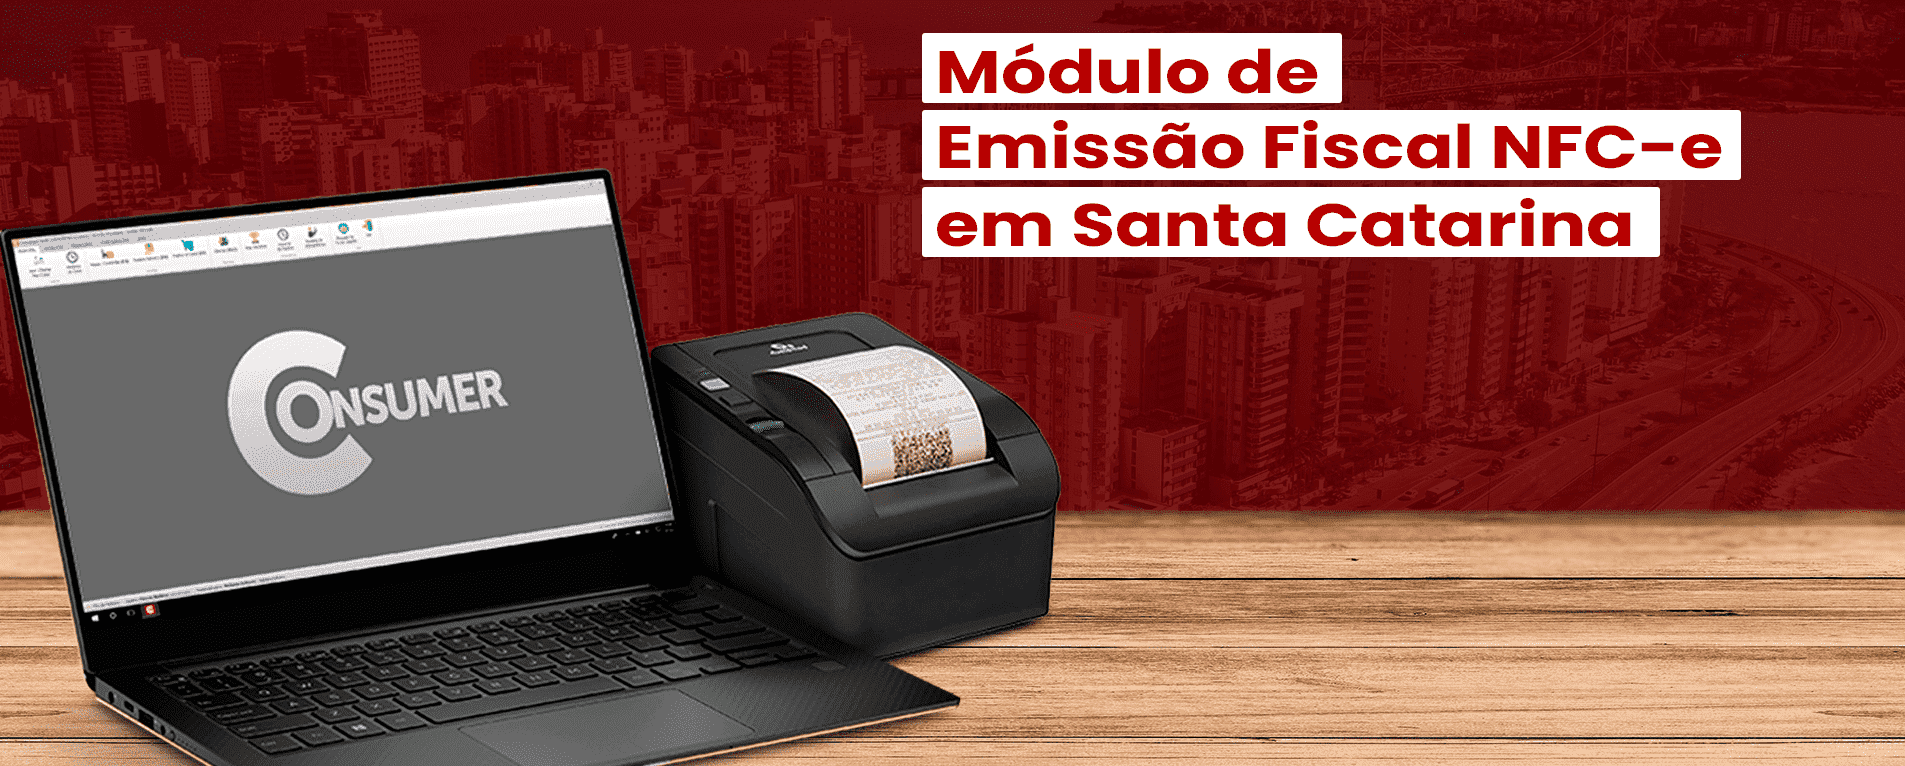 Consumer Lança Módulo de Emissão Fiscal NFC-e em Santa Catarina